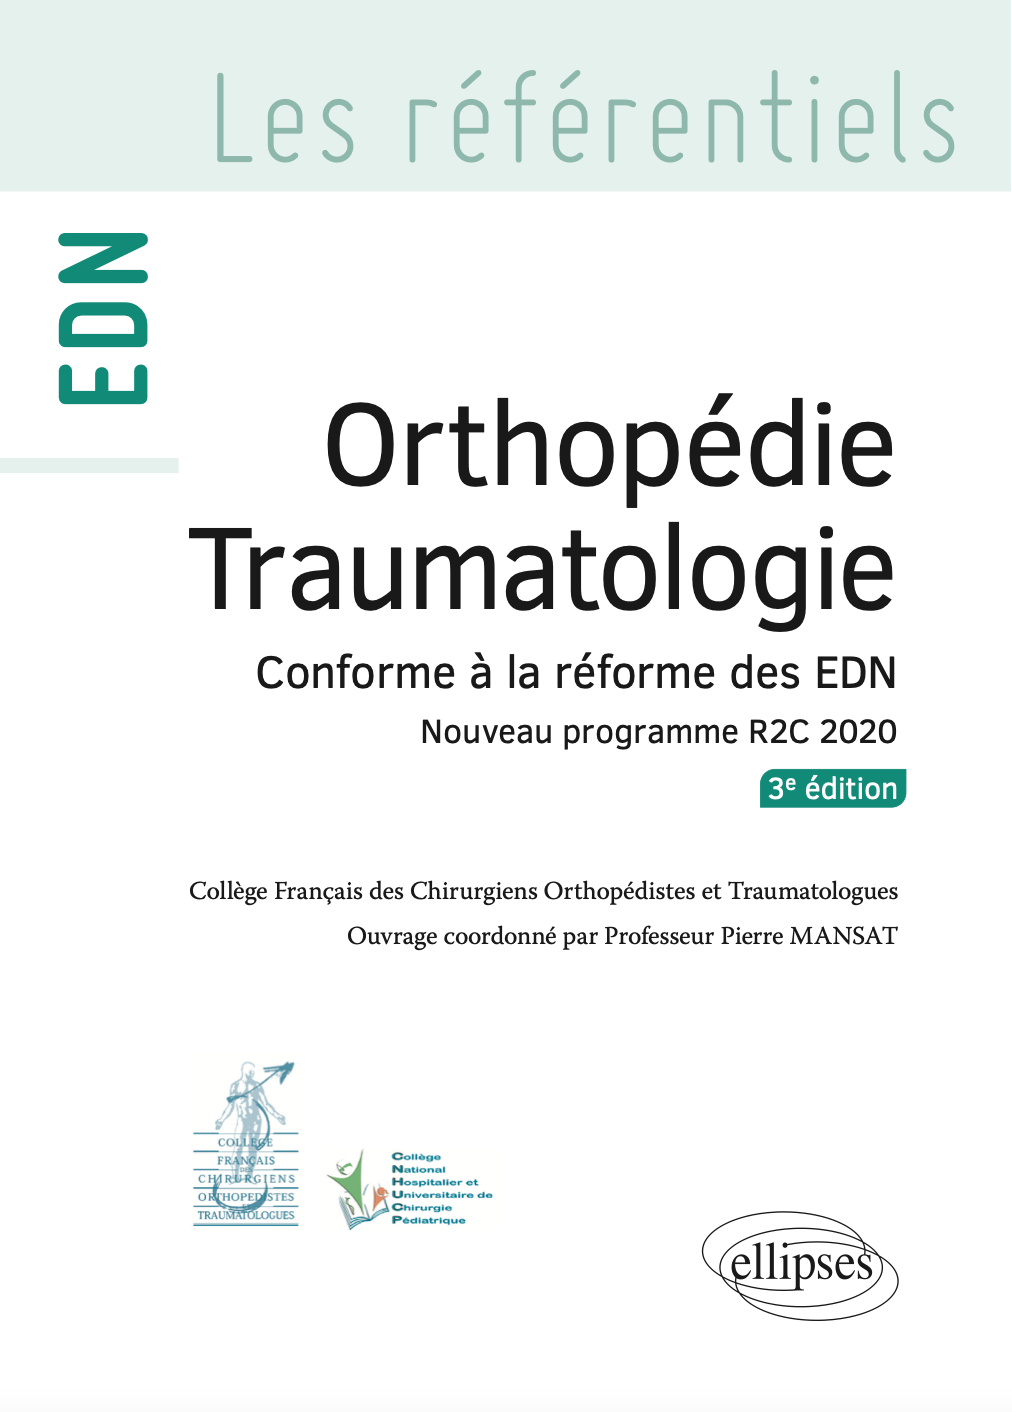 3e édition du collège de Chirurgie orthopédique et traumatologique